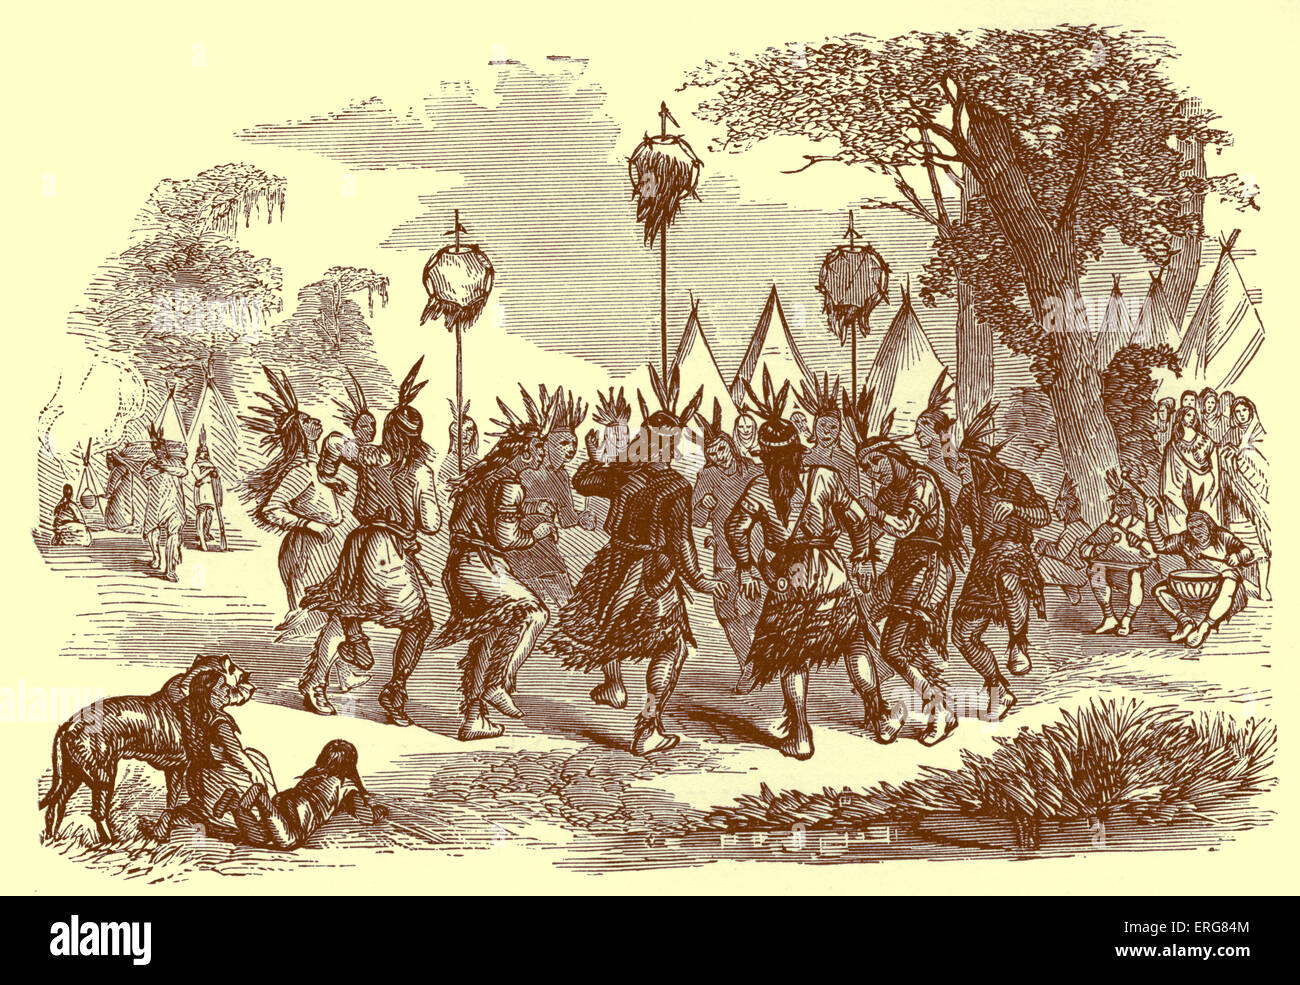 Nativi Americani di eseguire una danza del cuoio capelluto, pubblicato nel 1887. La Danza del cuoio capelluto è stata eseguita da guerrieri di tribù come i Foto Stock